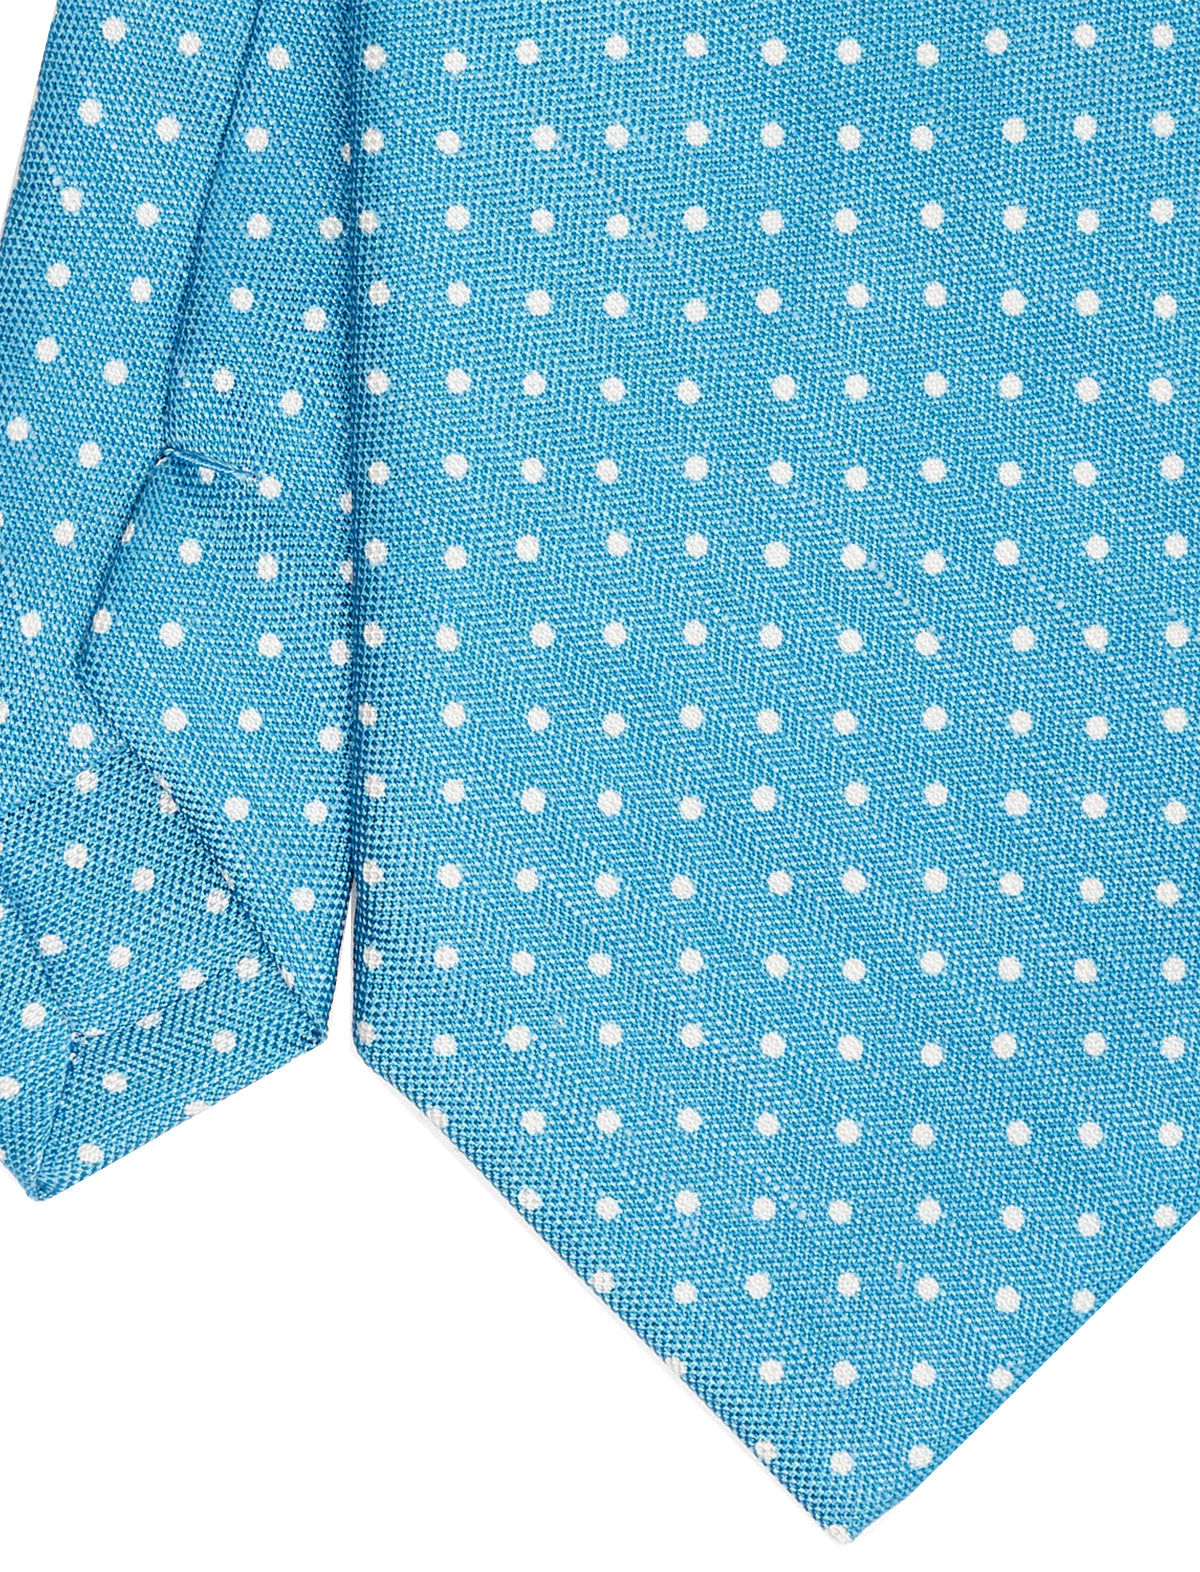 E.Marinella Dotted Linen Tie in Bright Blue